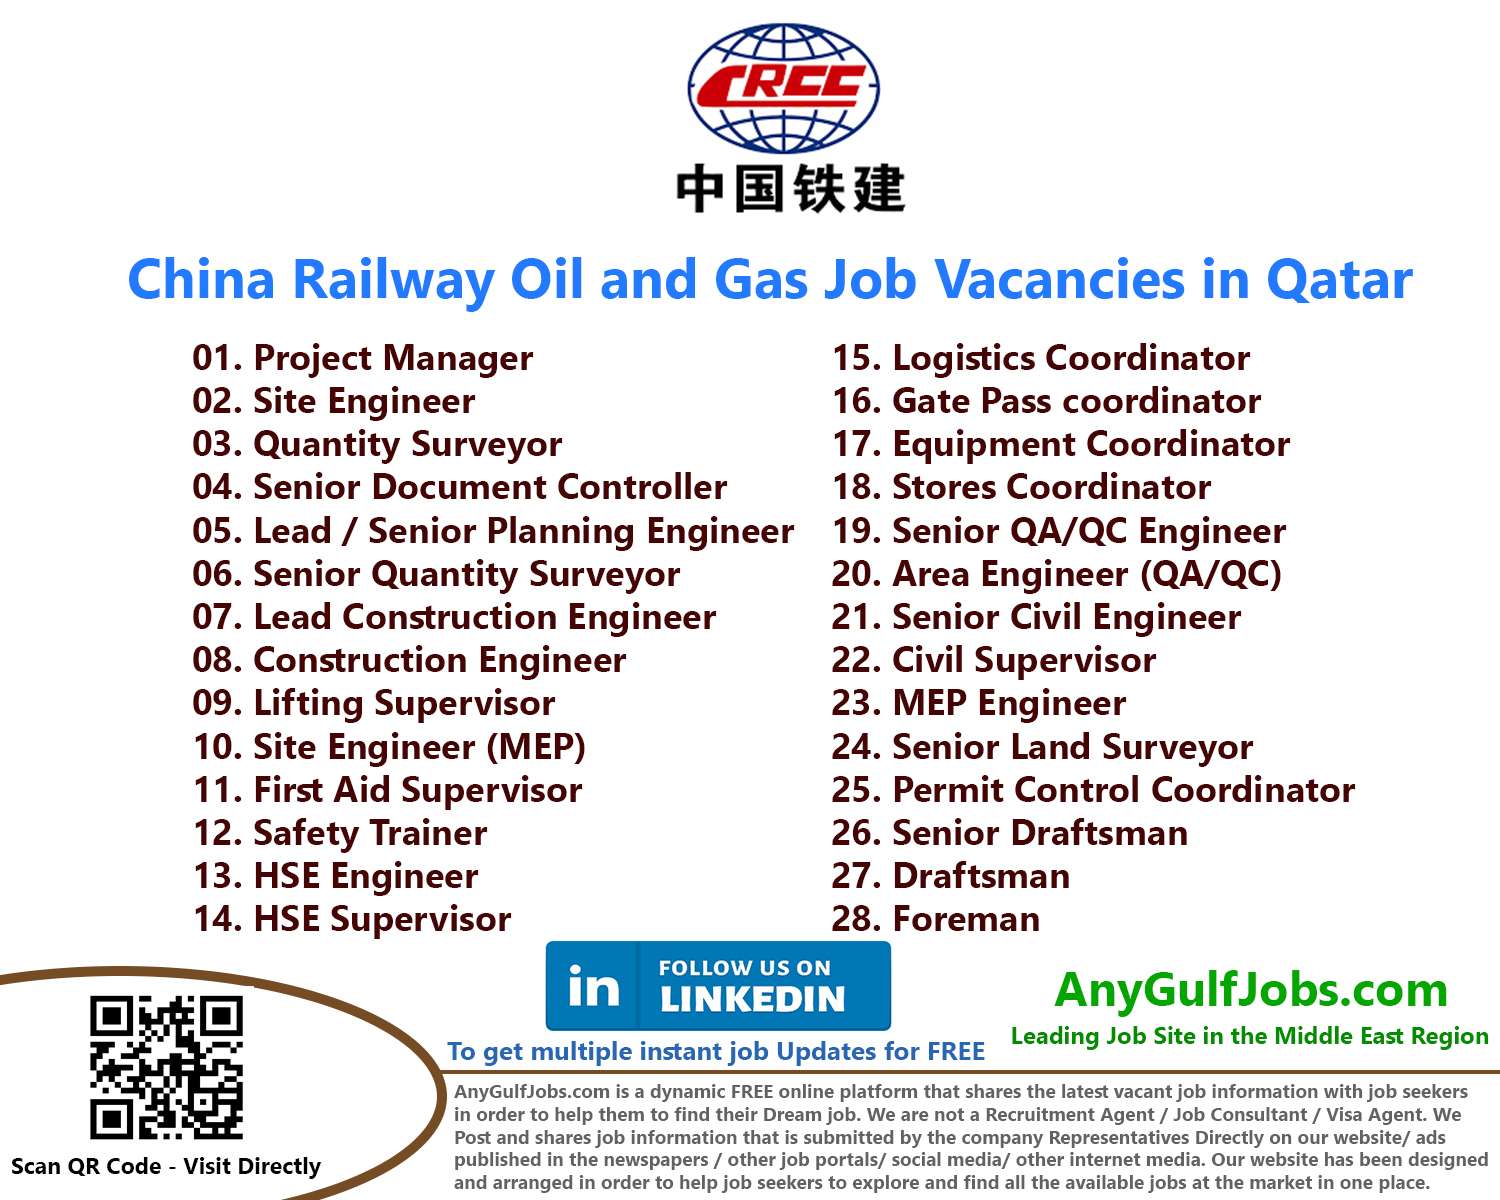 China Railway Oil and Gas Job Vacancies in Qatar 